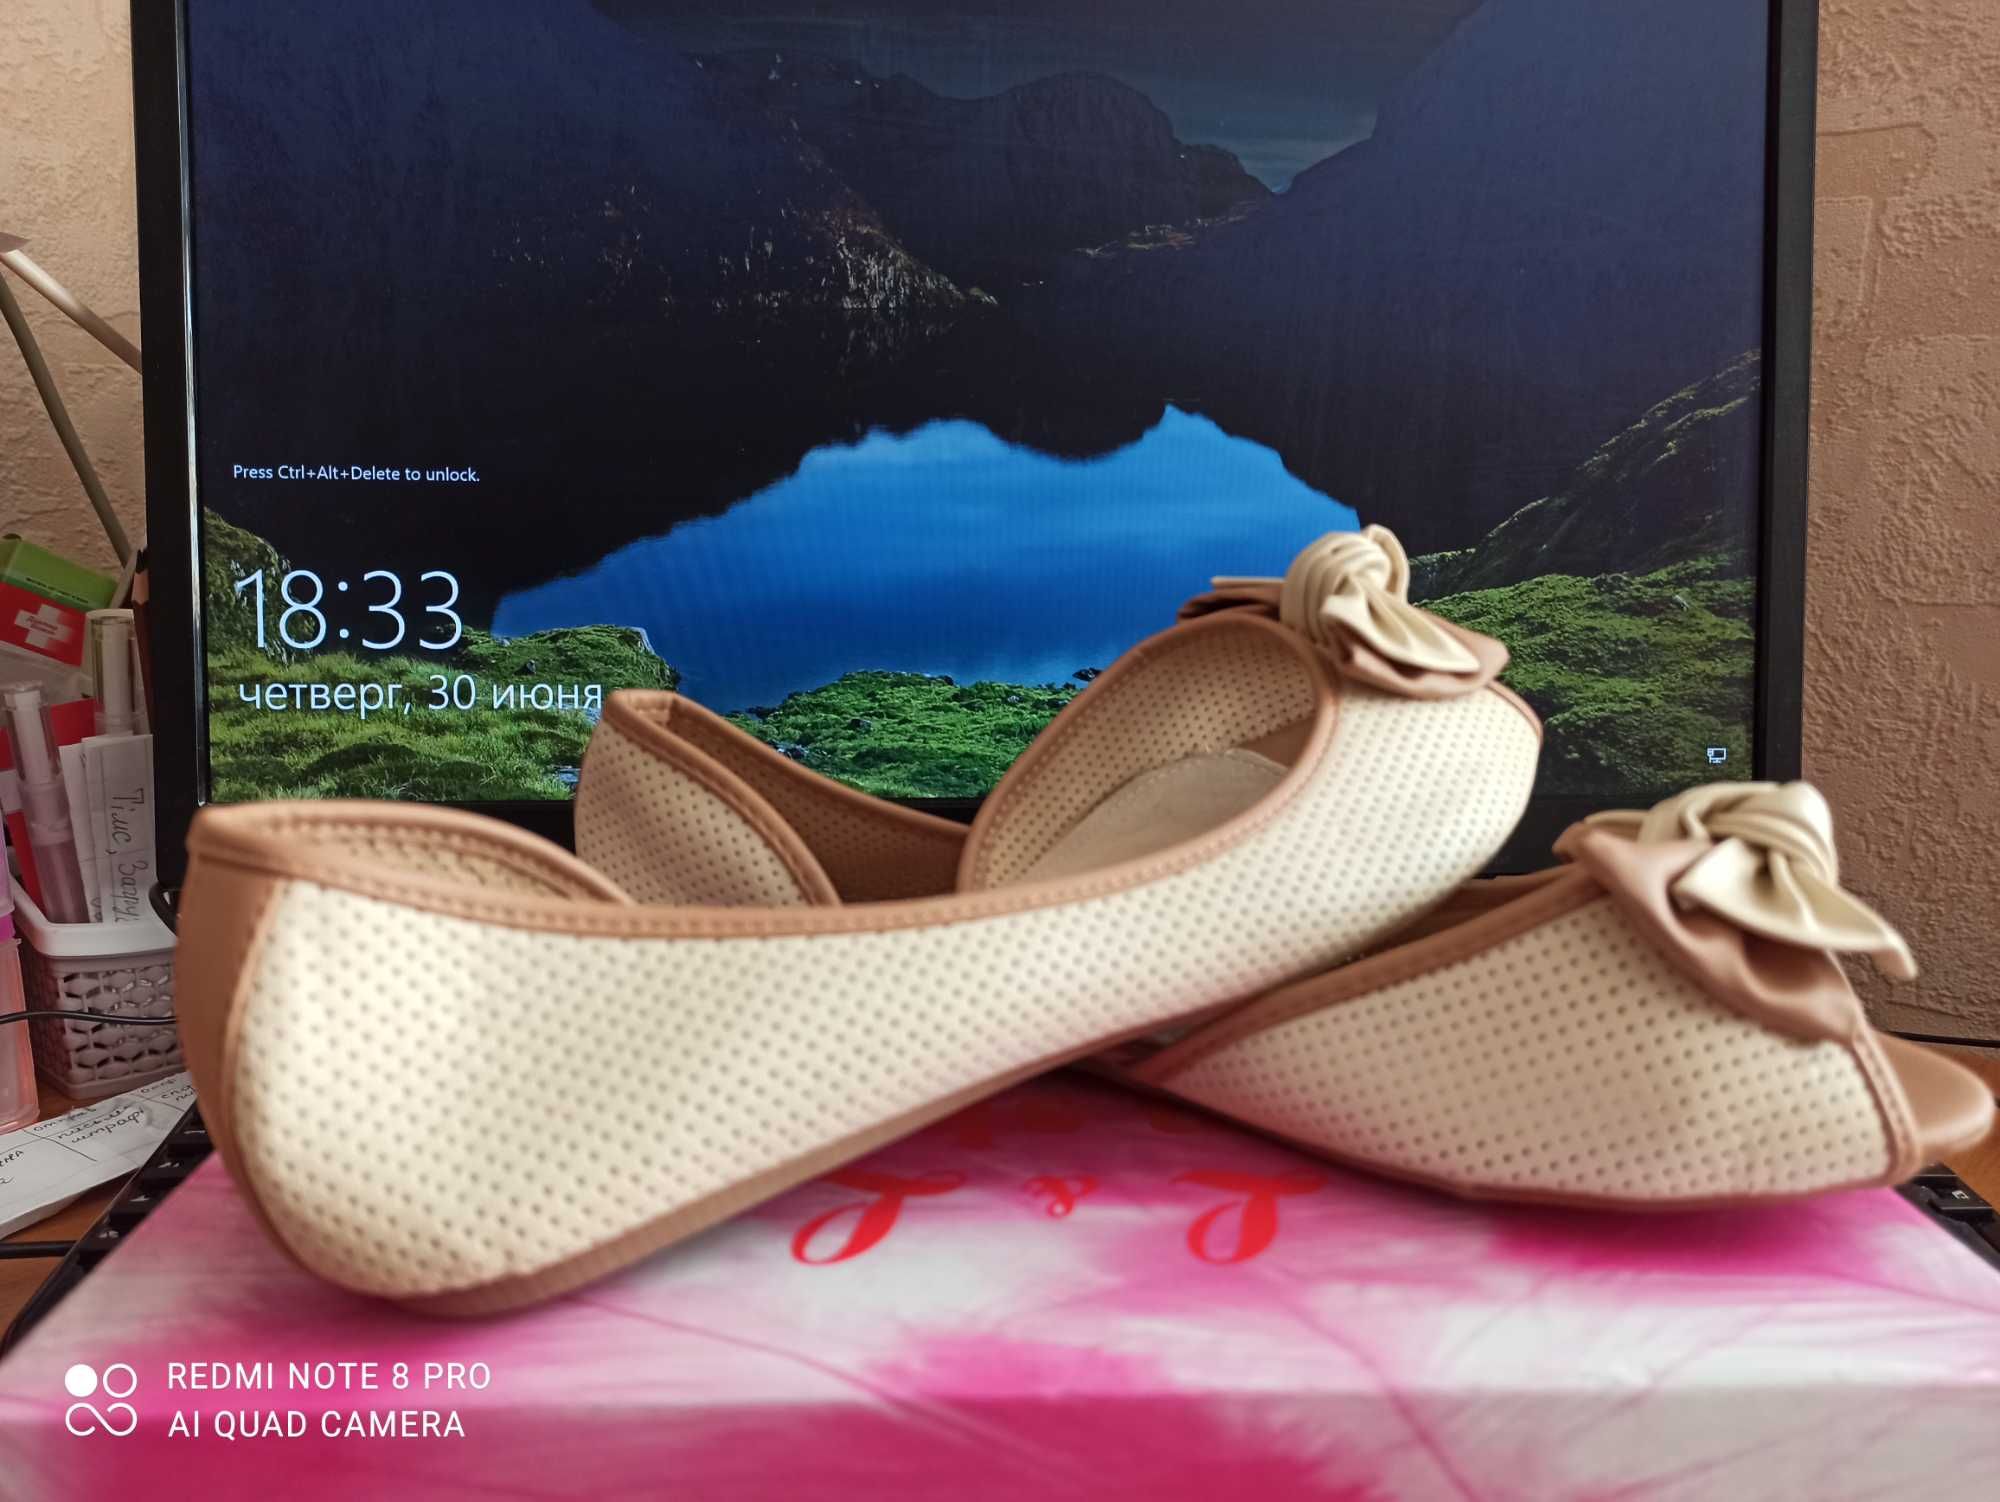 Босоножки балетки туфли летняя обувь женская размер 39